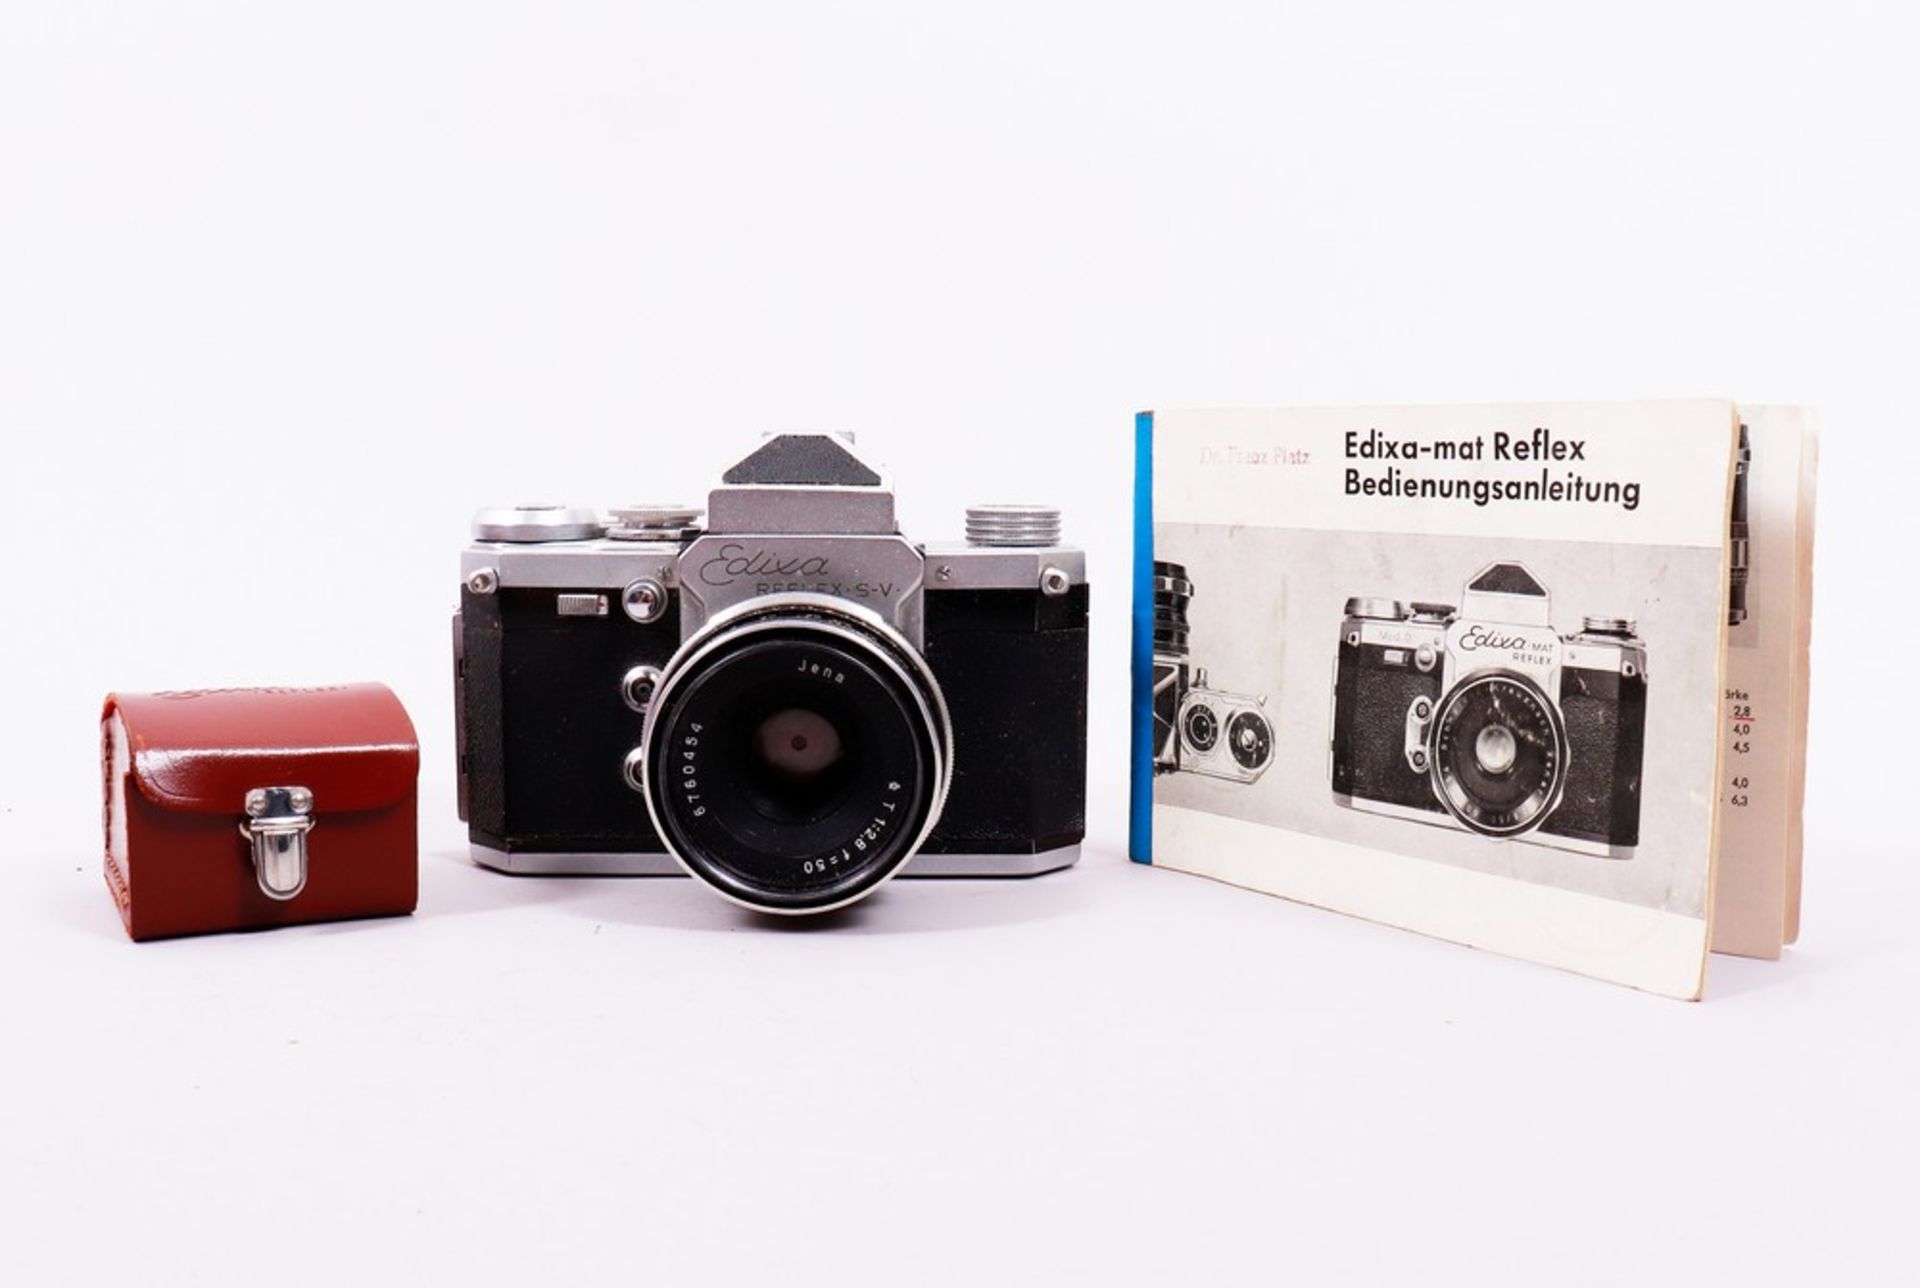 Kamera "Edixa Reflex", Hersteller Wirgin, um 1960 - Bild 6 aus 7